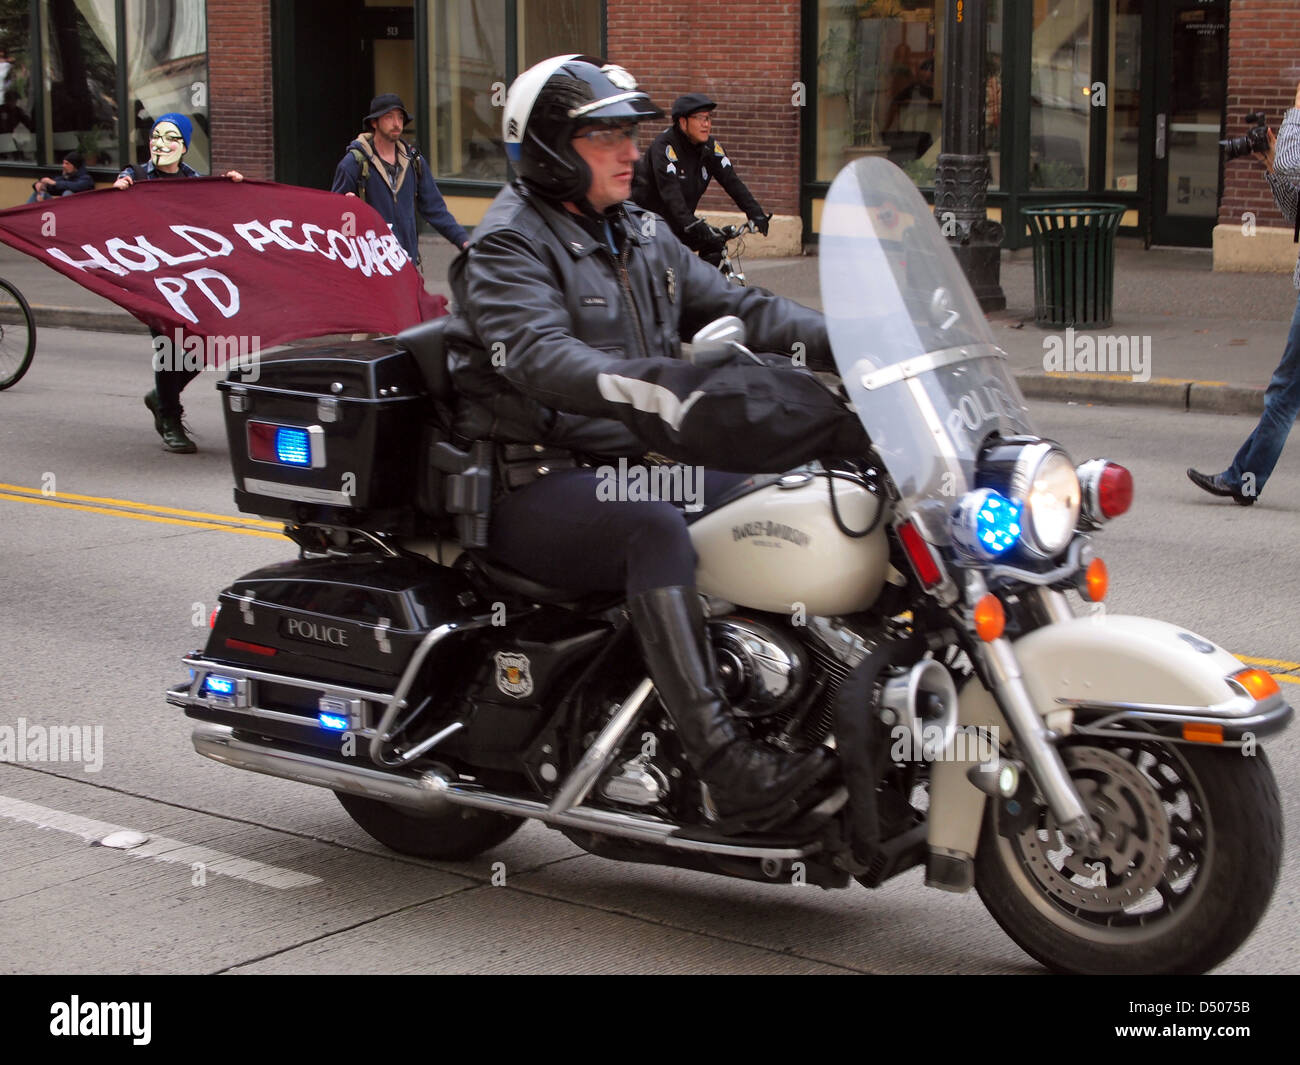 Seattle Police Department un motocycliste lors d'une démonstration de la police anti au centre-ville de Seattle, Washington, USA Banque D'Images